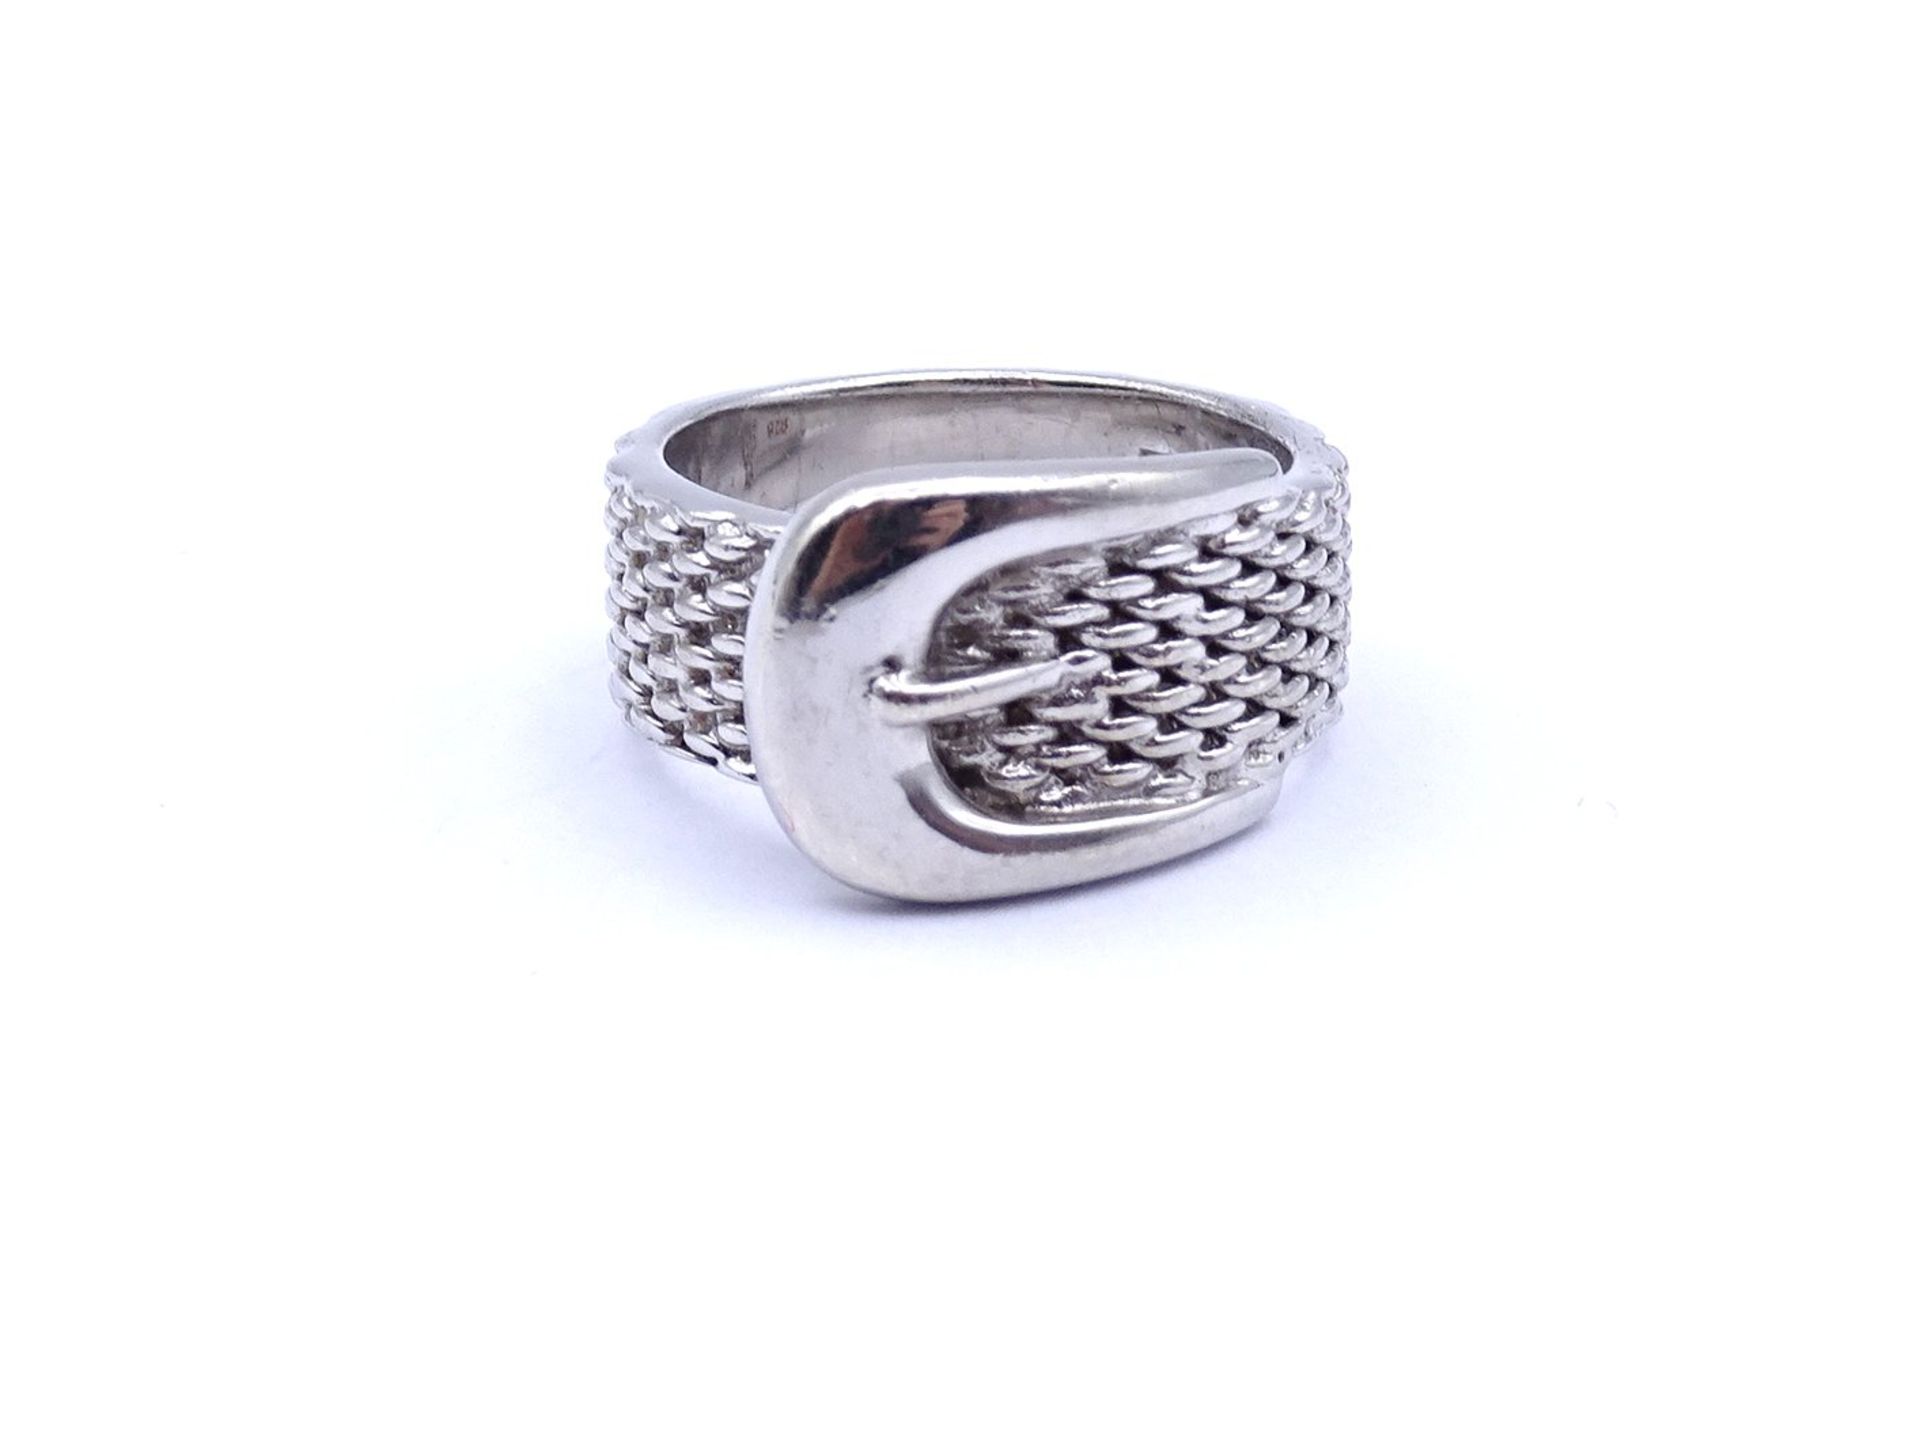 925er Silber Ring in Form eines Gürtels, 10g., RG 57